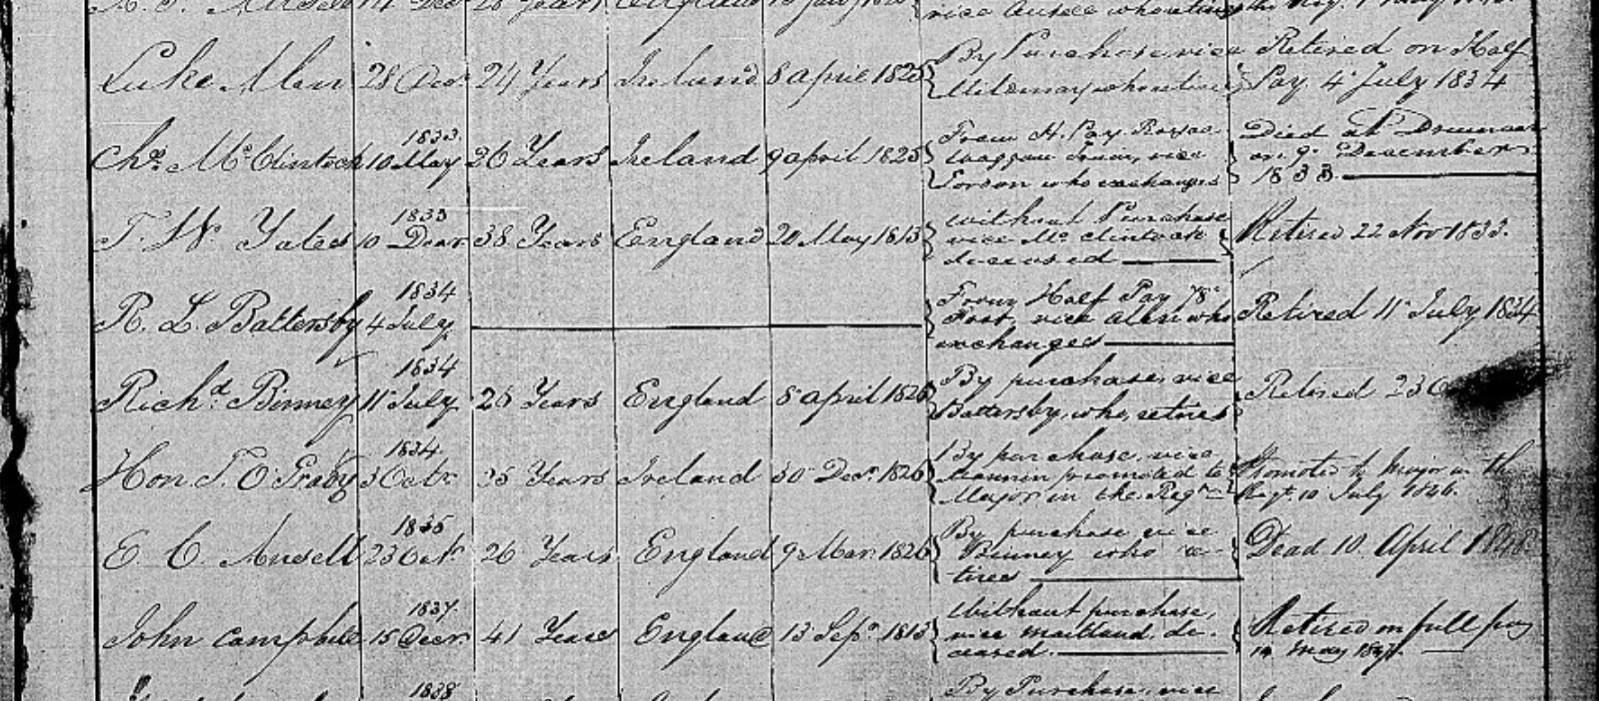 Thomas Ogrady Army Record, 1846, Linked To: <a href='profiles/i92.html' >Thomas O’Grady Hon.~</a>